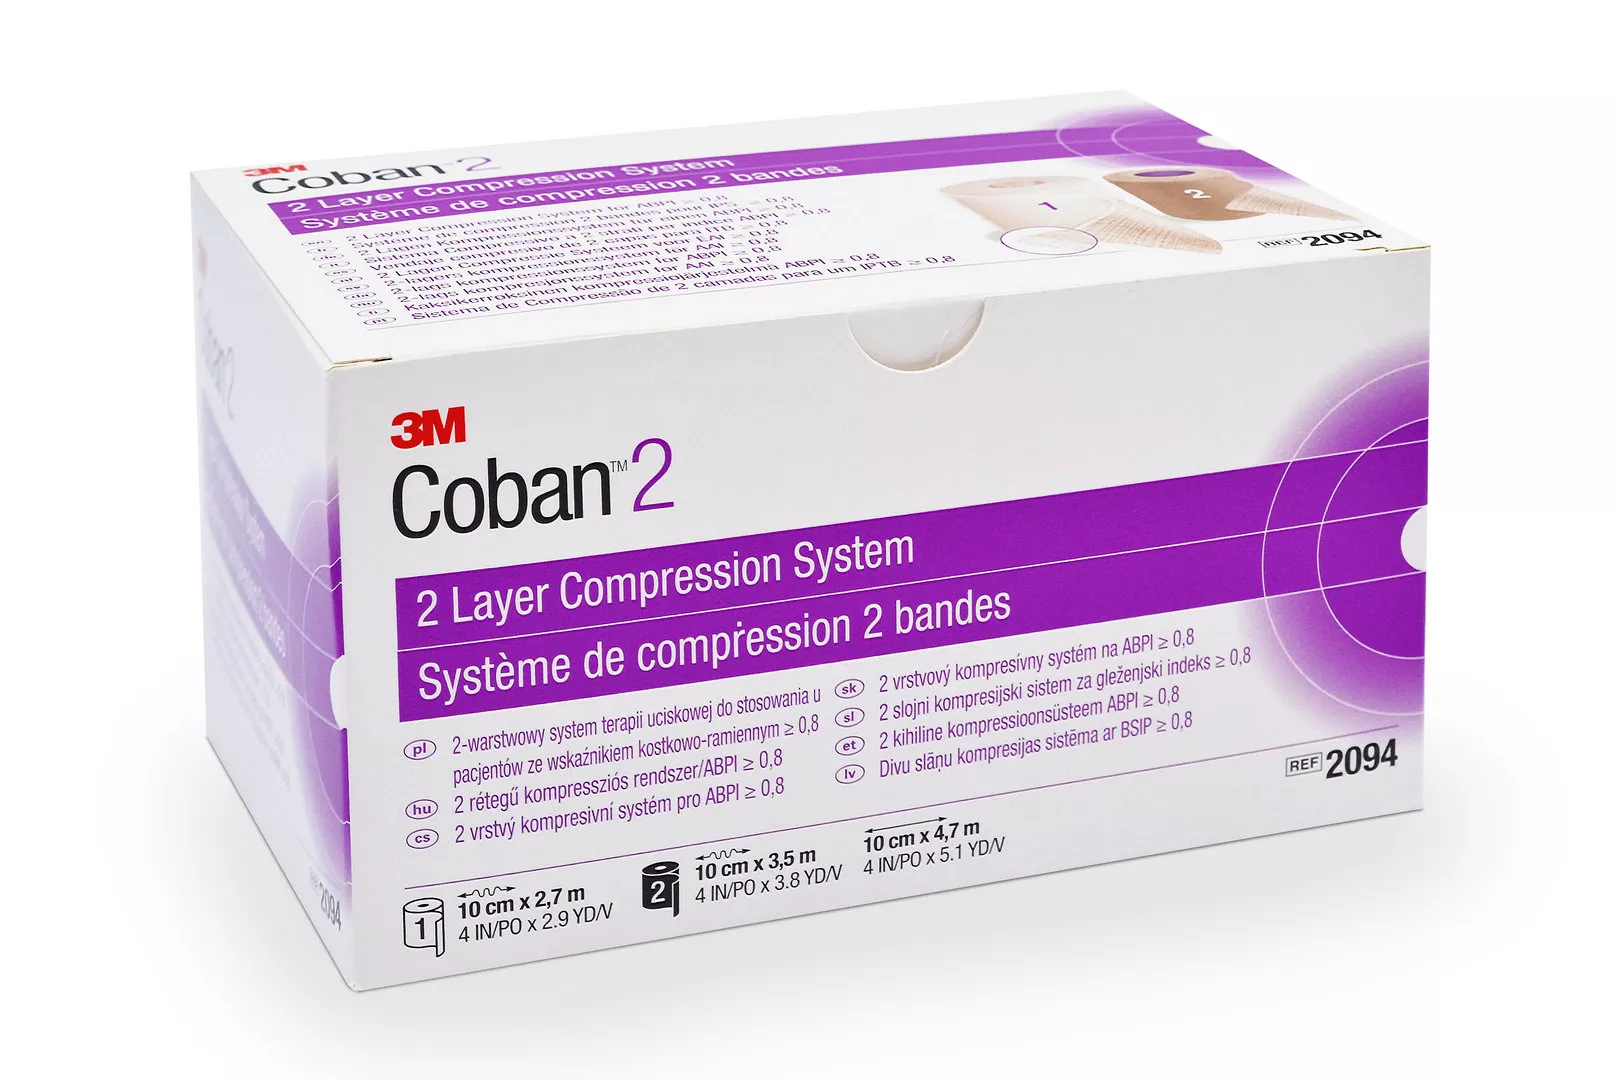 COBAN 2 Lagen FK Kompressionssystem 2094 mit zwei Rollen 10cm x 2.7m / 10cm x 3.5m kaufen